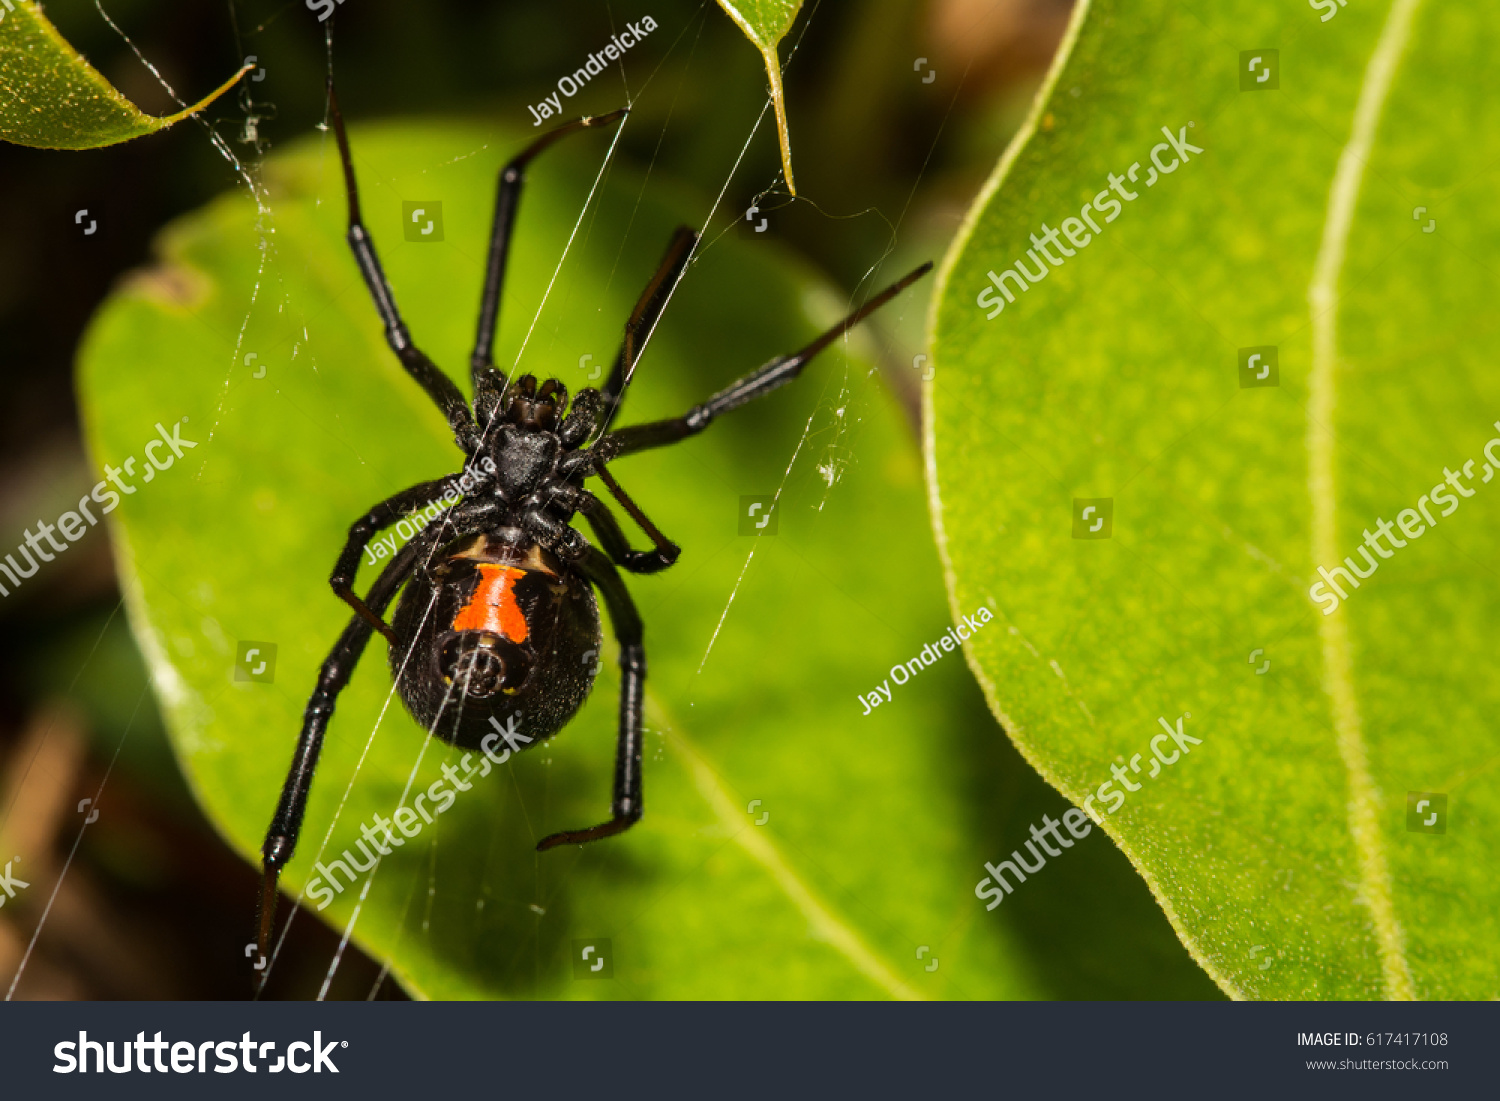 Black Widow Spider #617417108